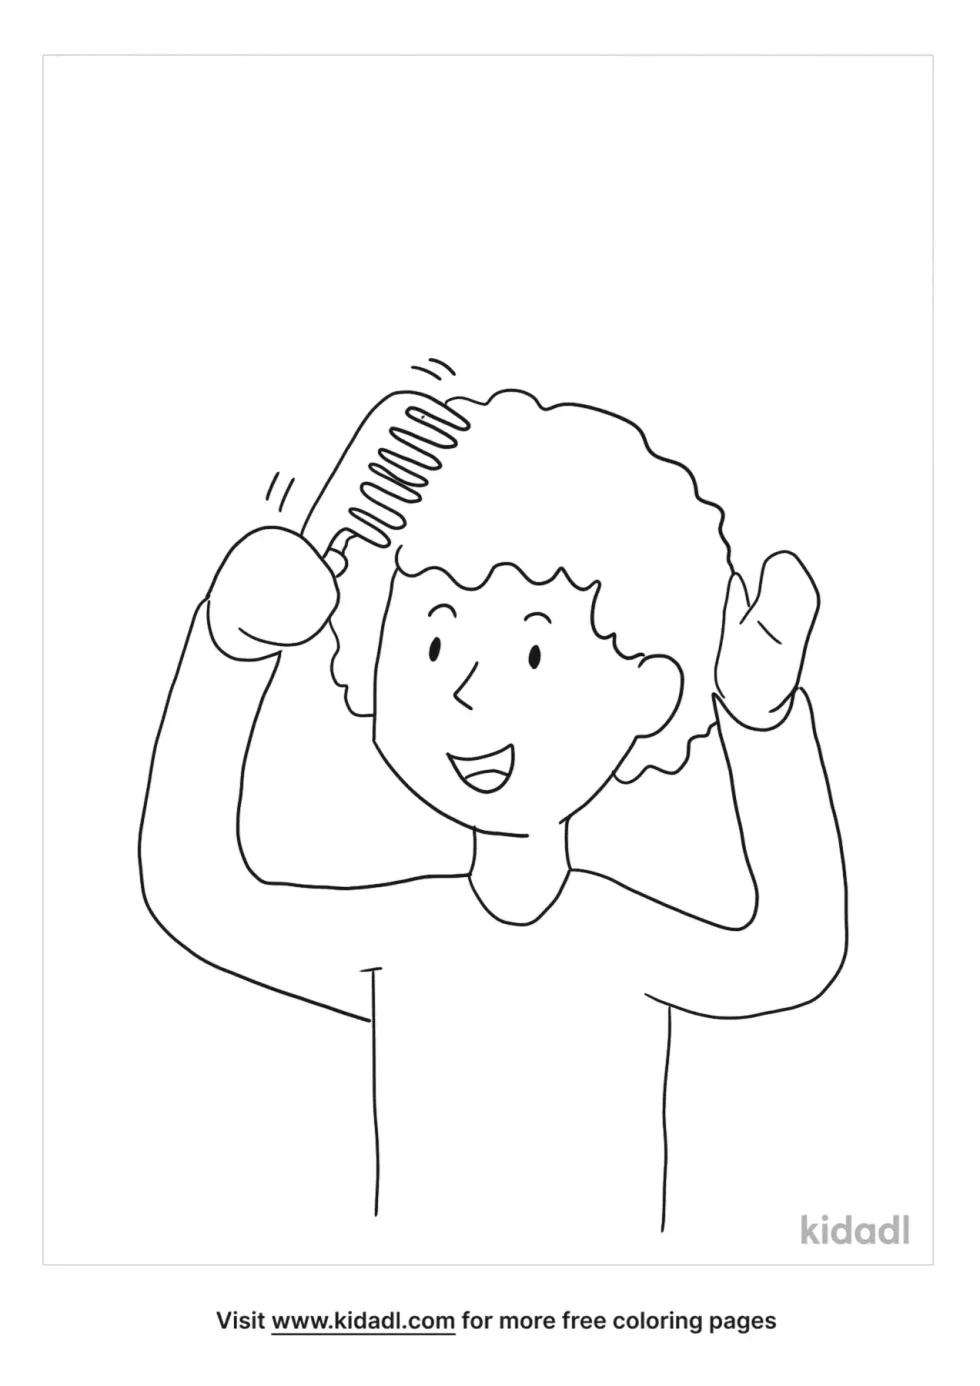 Combing Hair